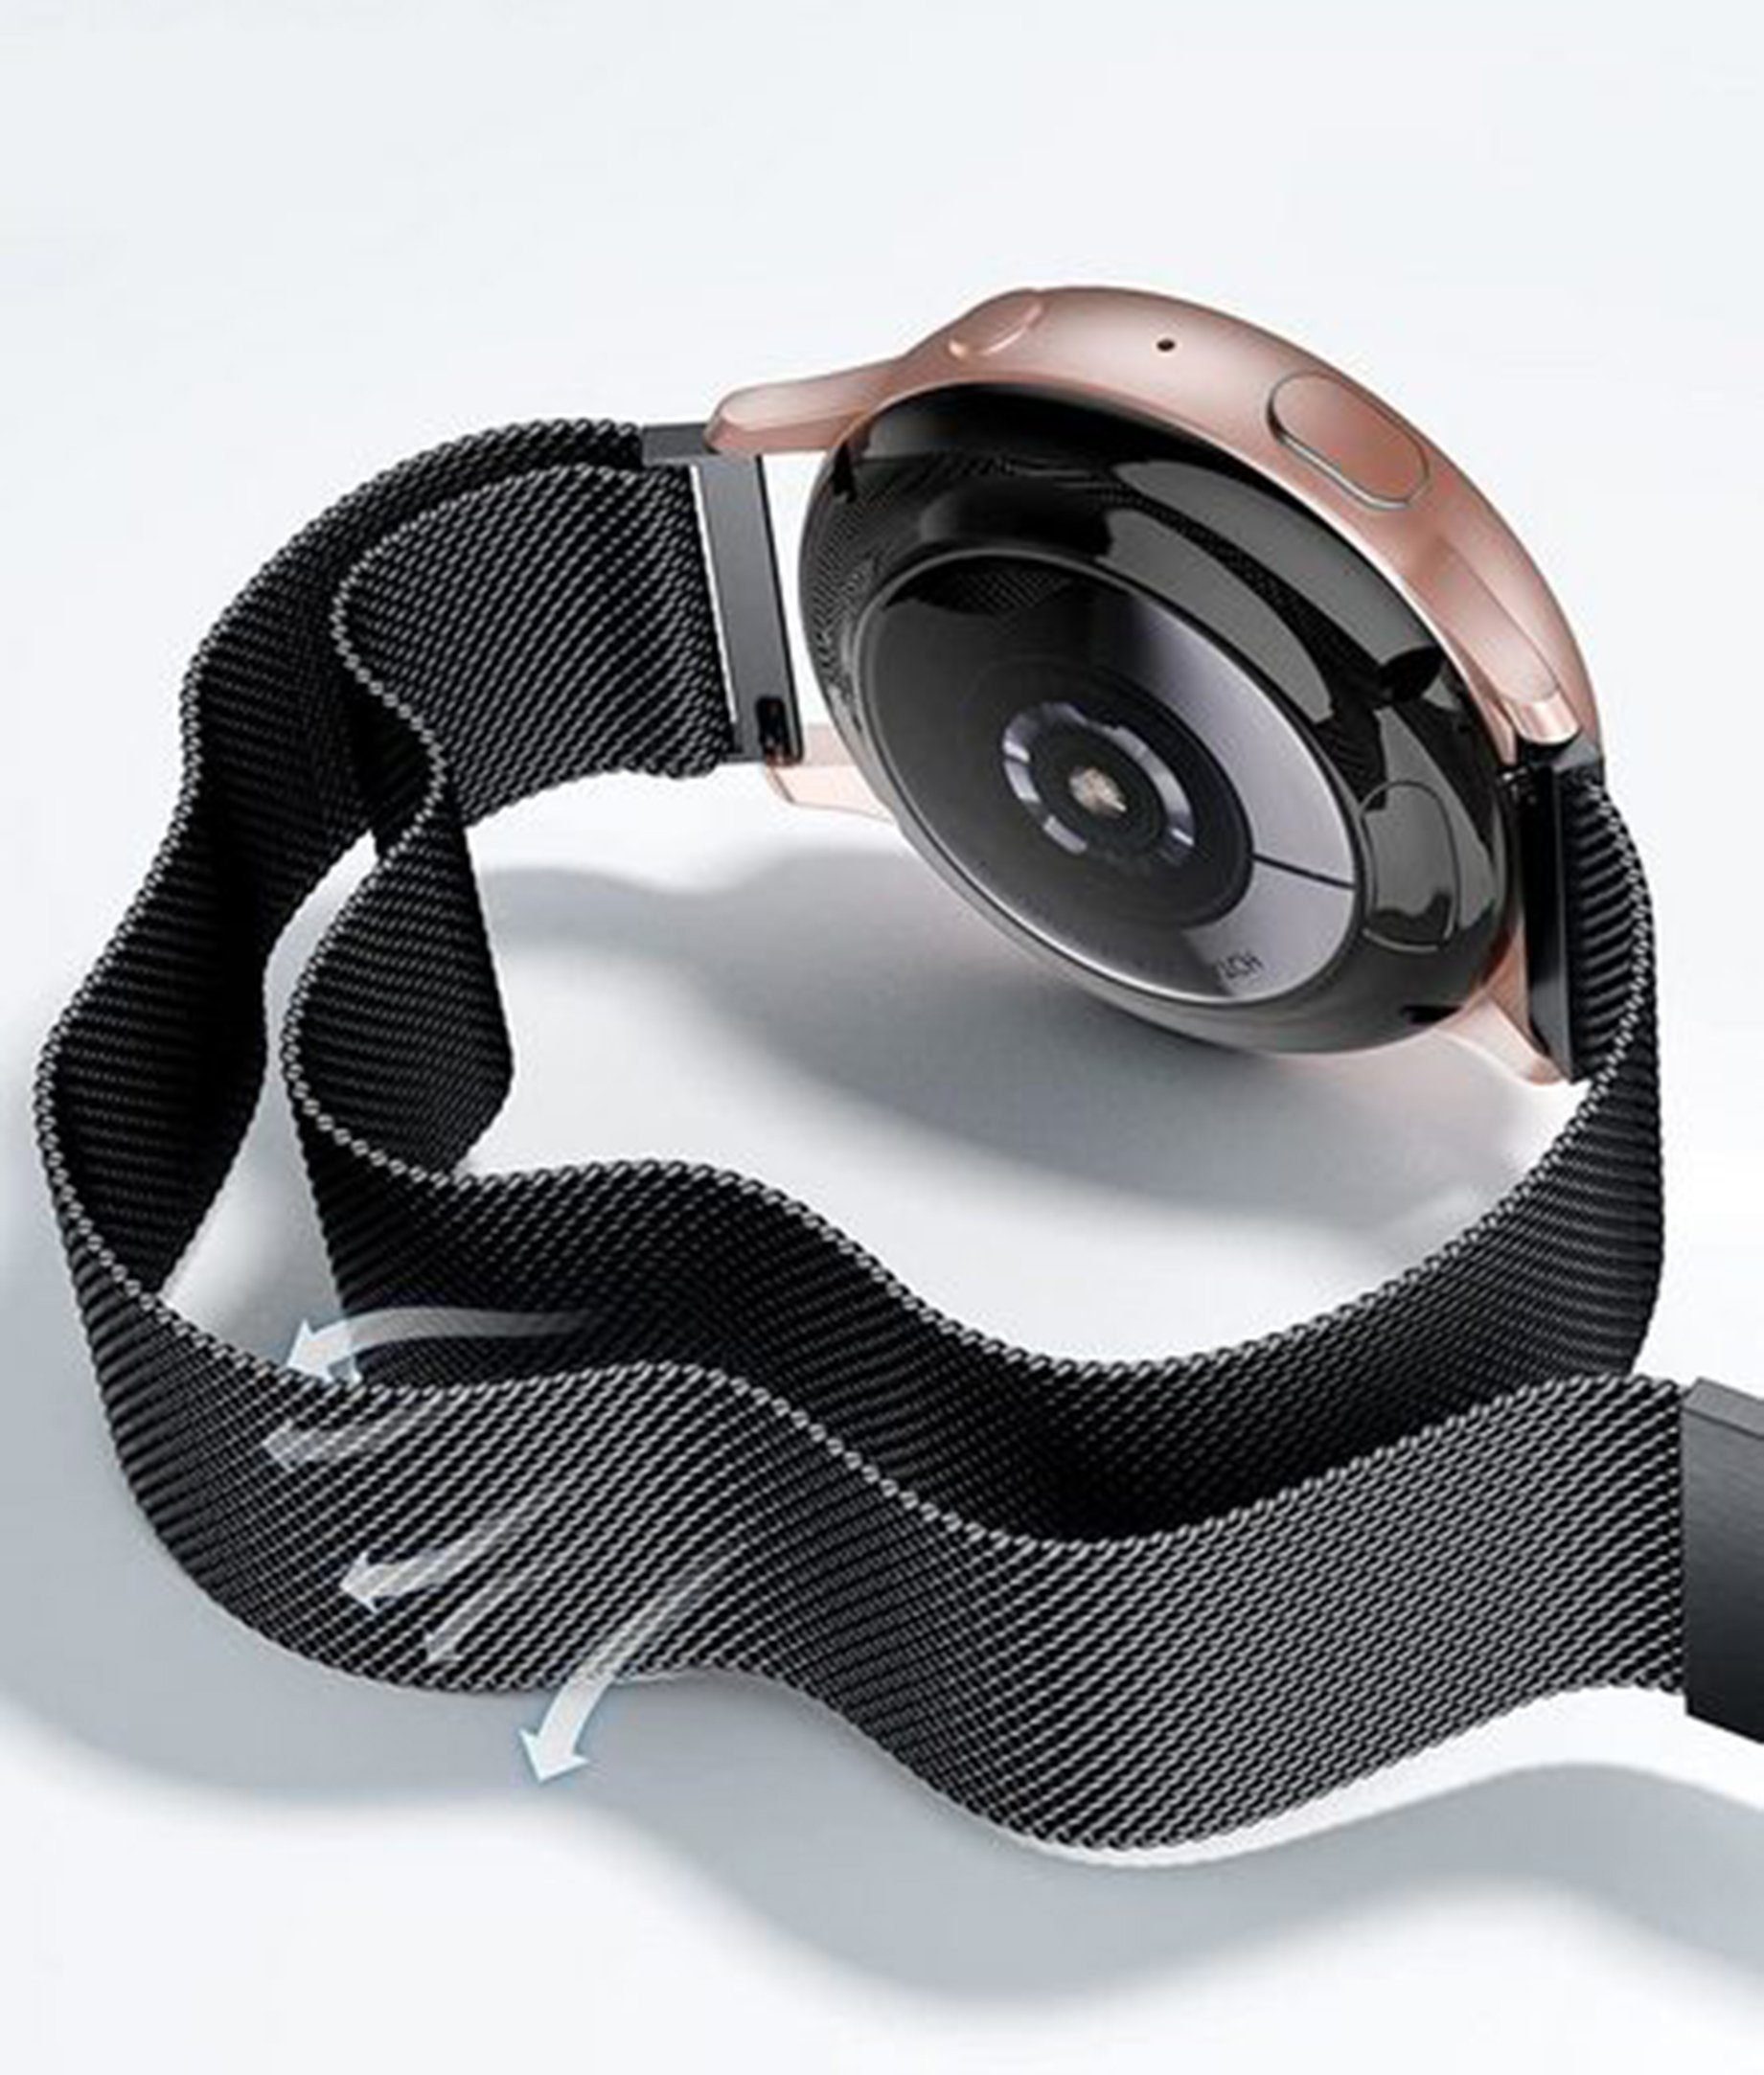 Uhrenarmbänder, / /Lite/ Versa Schwarz Smartwatch-Armband Fitbit 2 /Silber/Roségold Versa für Smartwatch-Armband, Diida SE